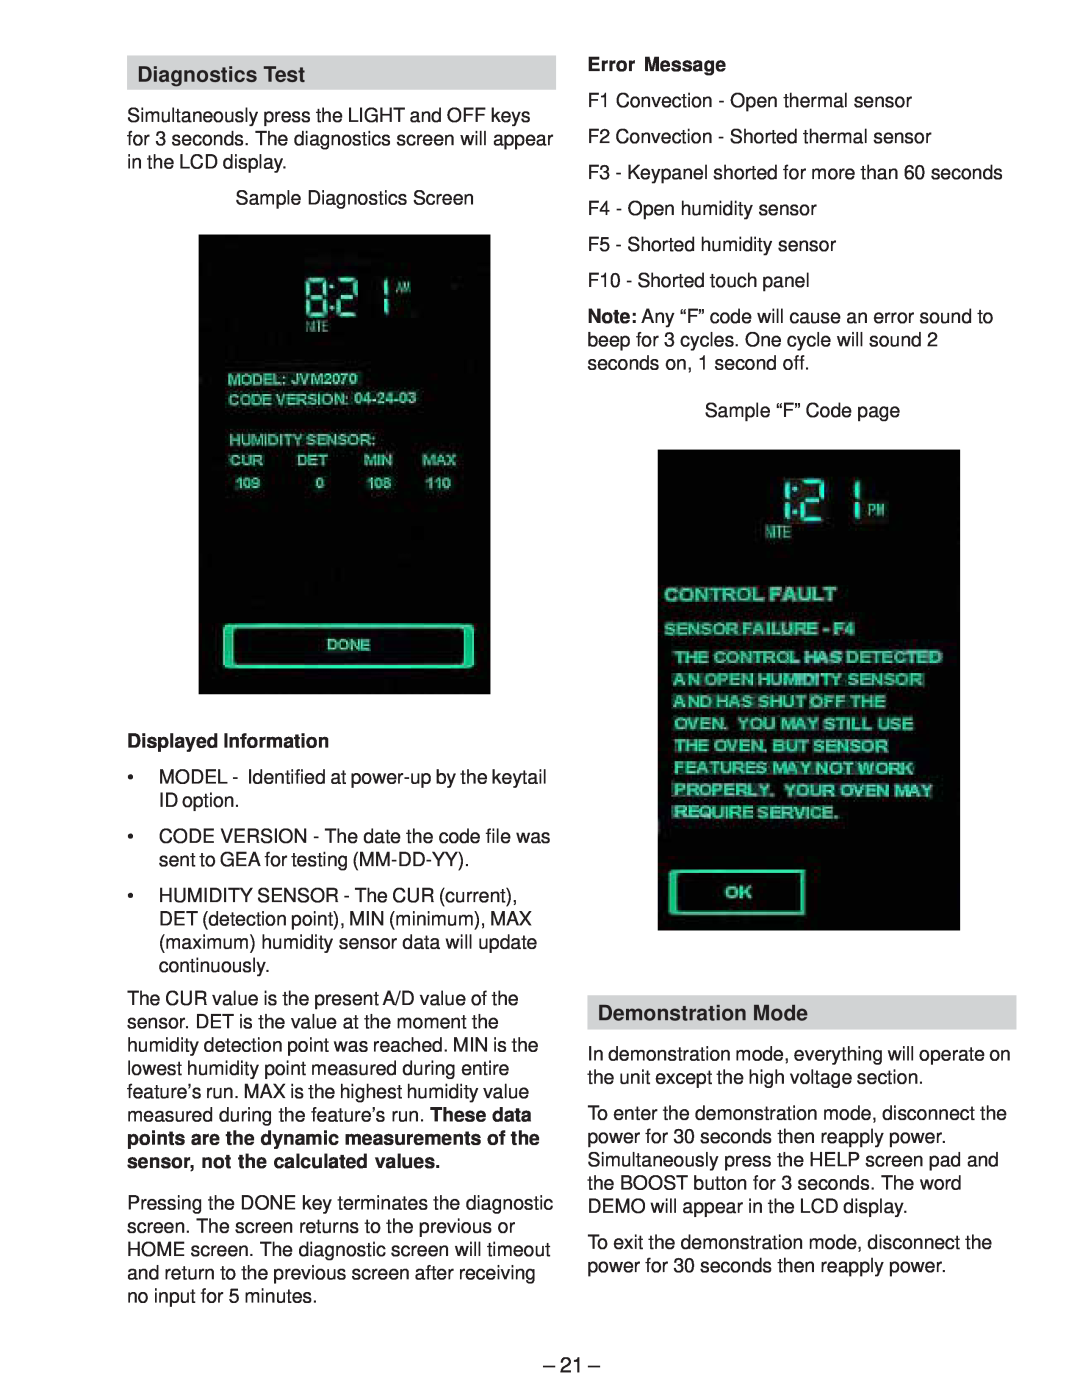 GE JVM2070_H manual Diagnostics Test, Demonstration Mode, Displayed Information, Error Message 